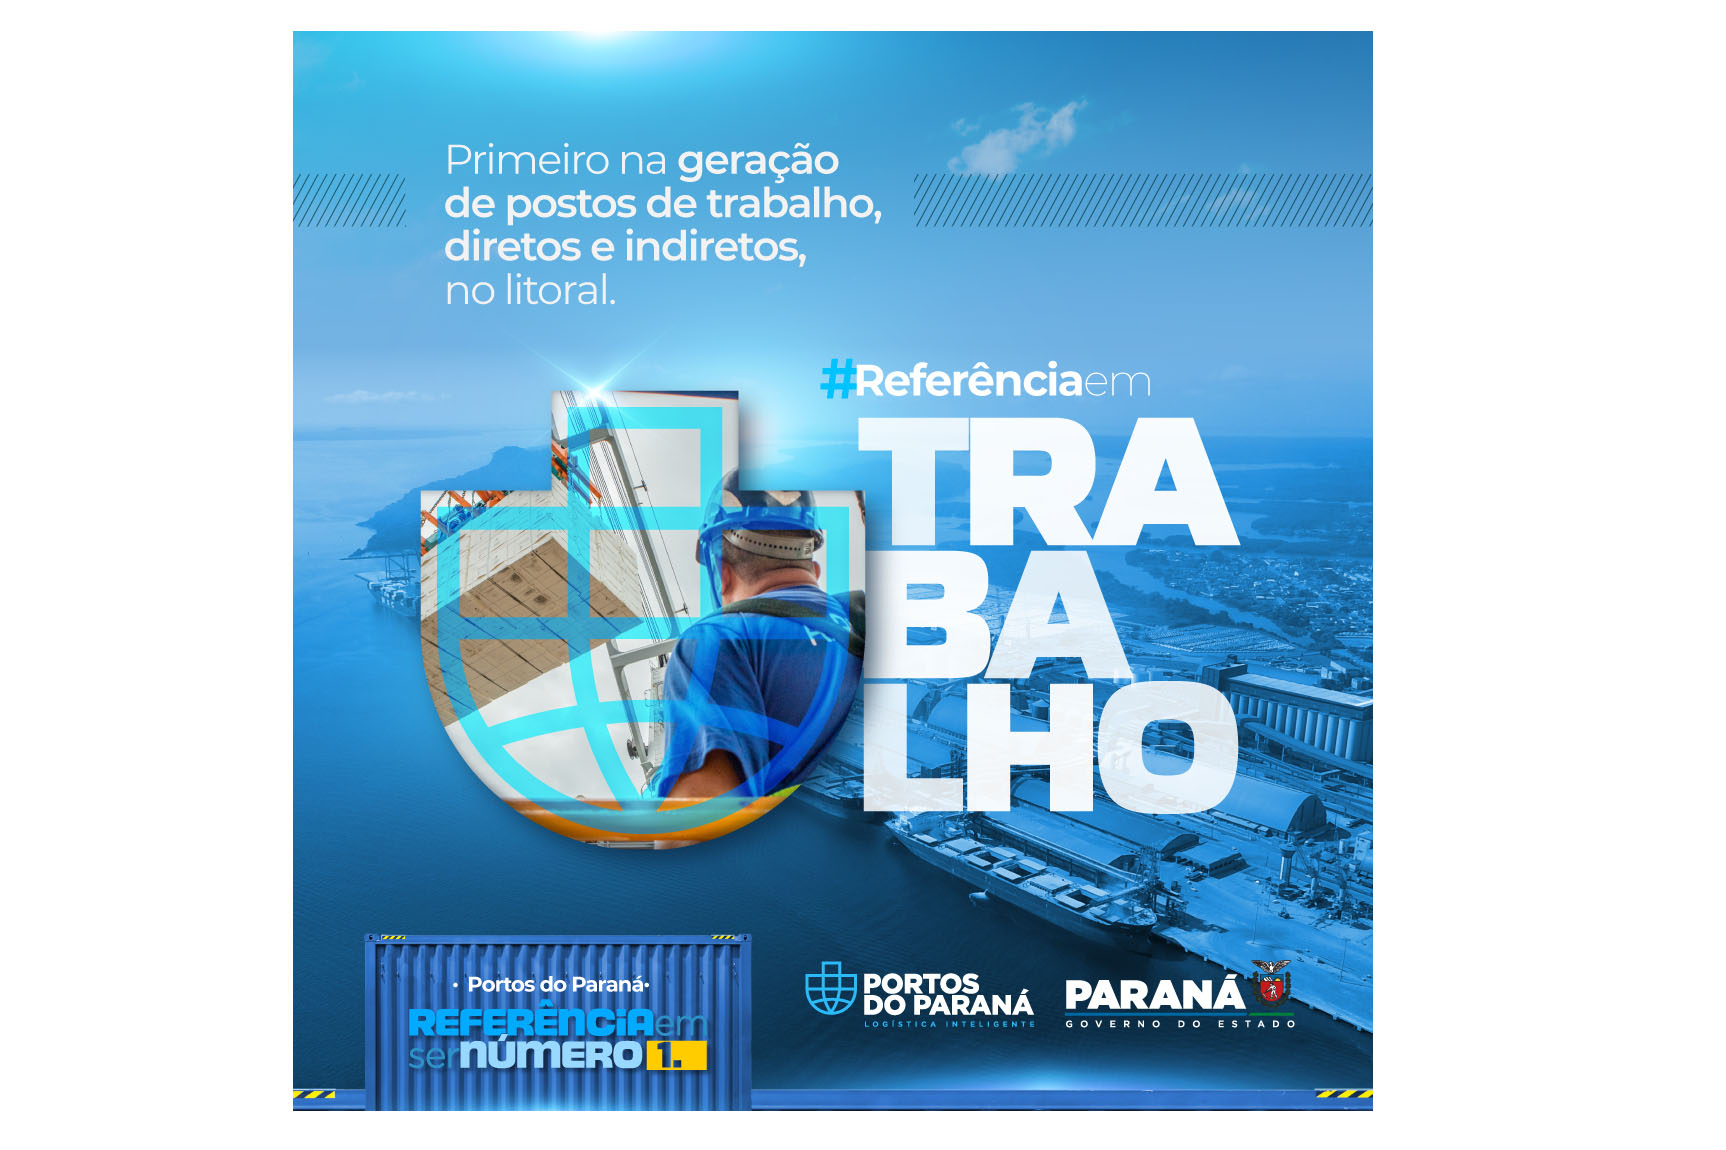 Portos do Paraná: liderança nacional em nova campanha institucional